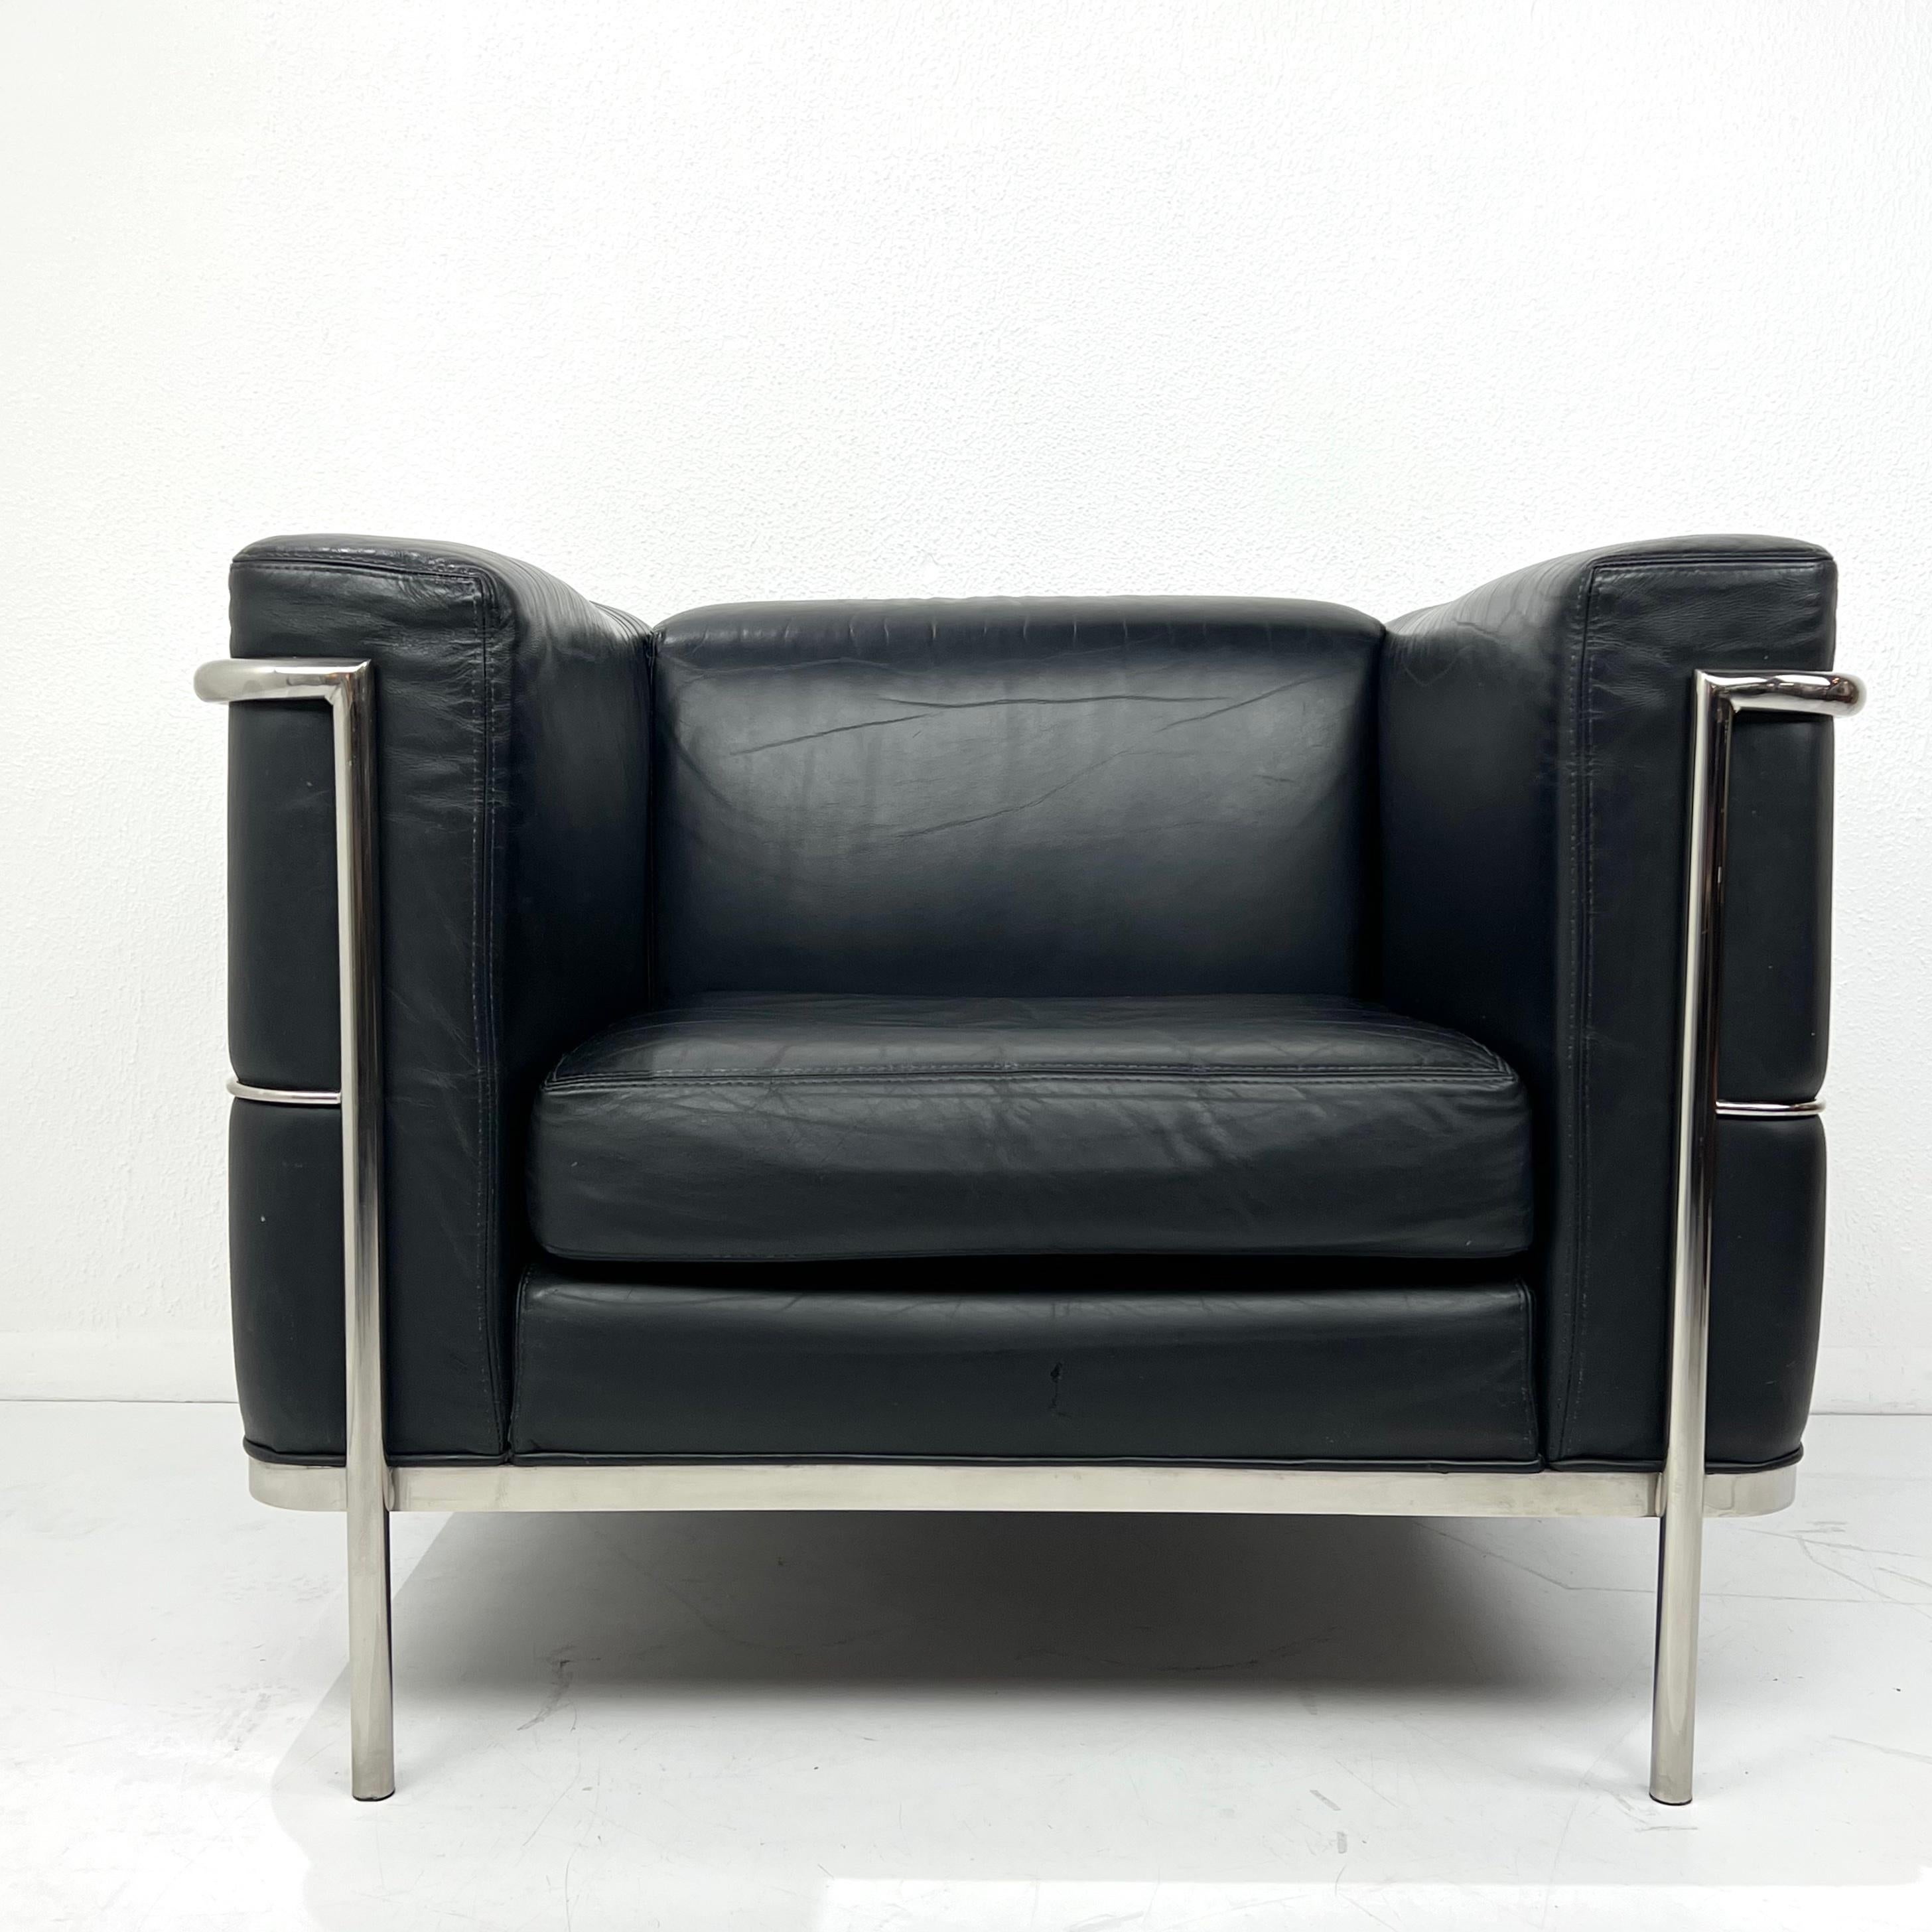 Beau fauteuil club 20/123 cube de Jack Cartwright d'après la chaise LC2 de Le Corbusier. Structure en acier tubulaire poli et revêtement en cuir noir. Bon état vintage avec quelques usures/rayures dues à l'âge et à l'utilisation. Vers 1970. 